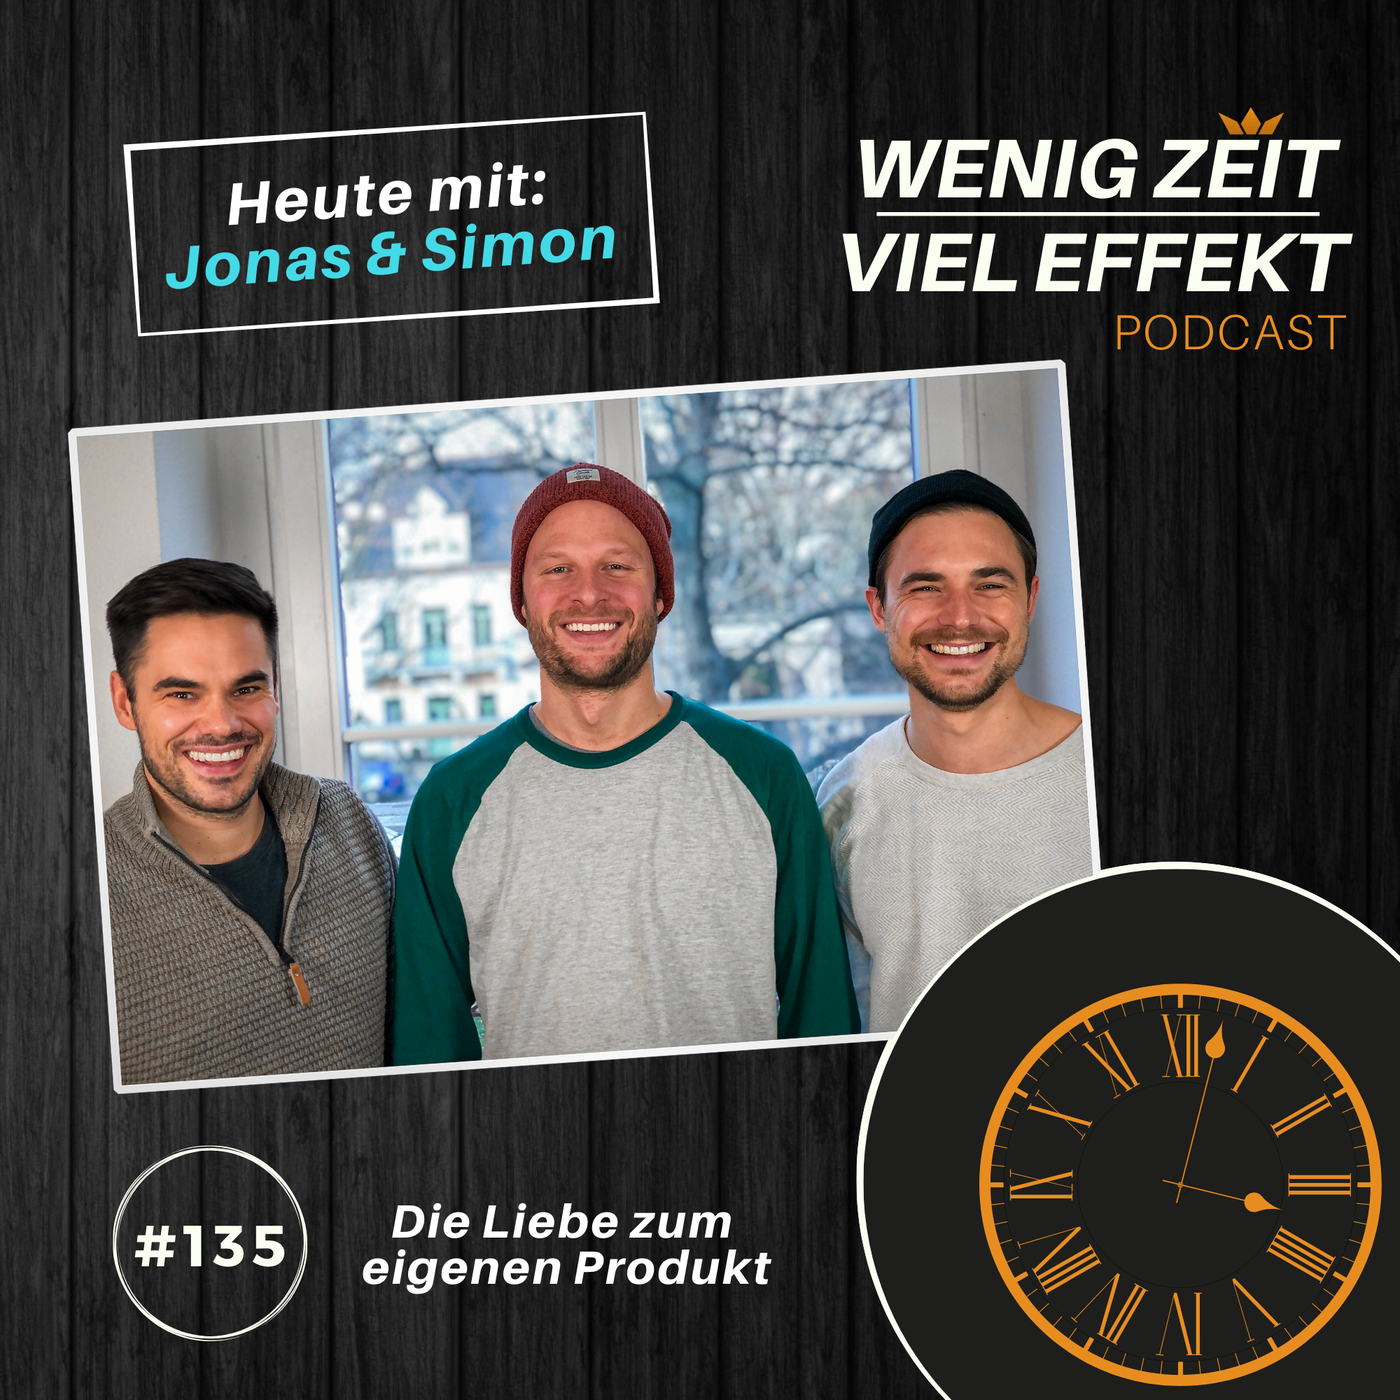 Die Liebe zum eigenen Produkt - mit Jonas & Simon | WZVE #135